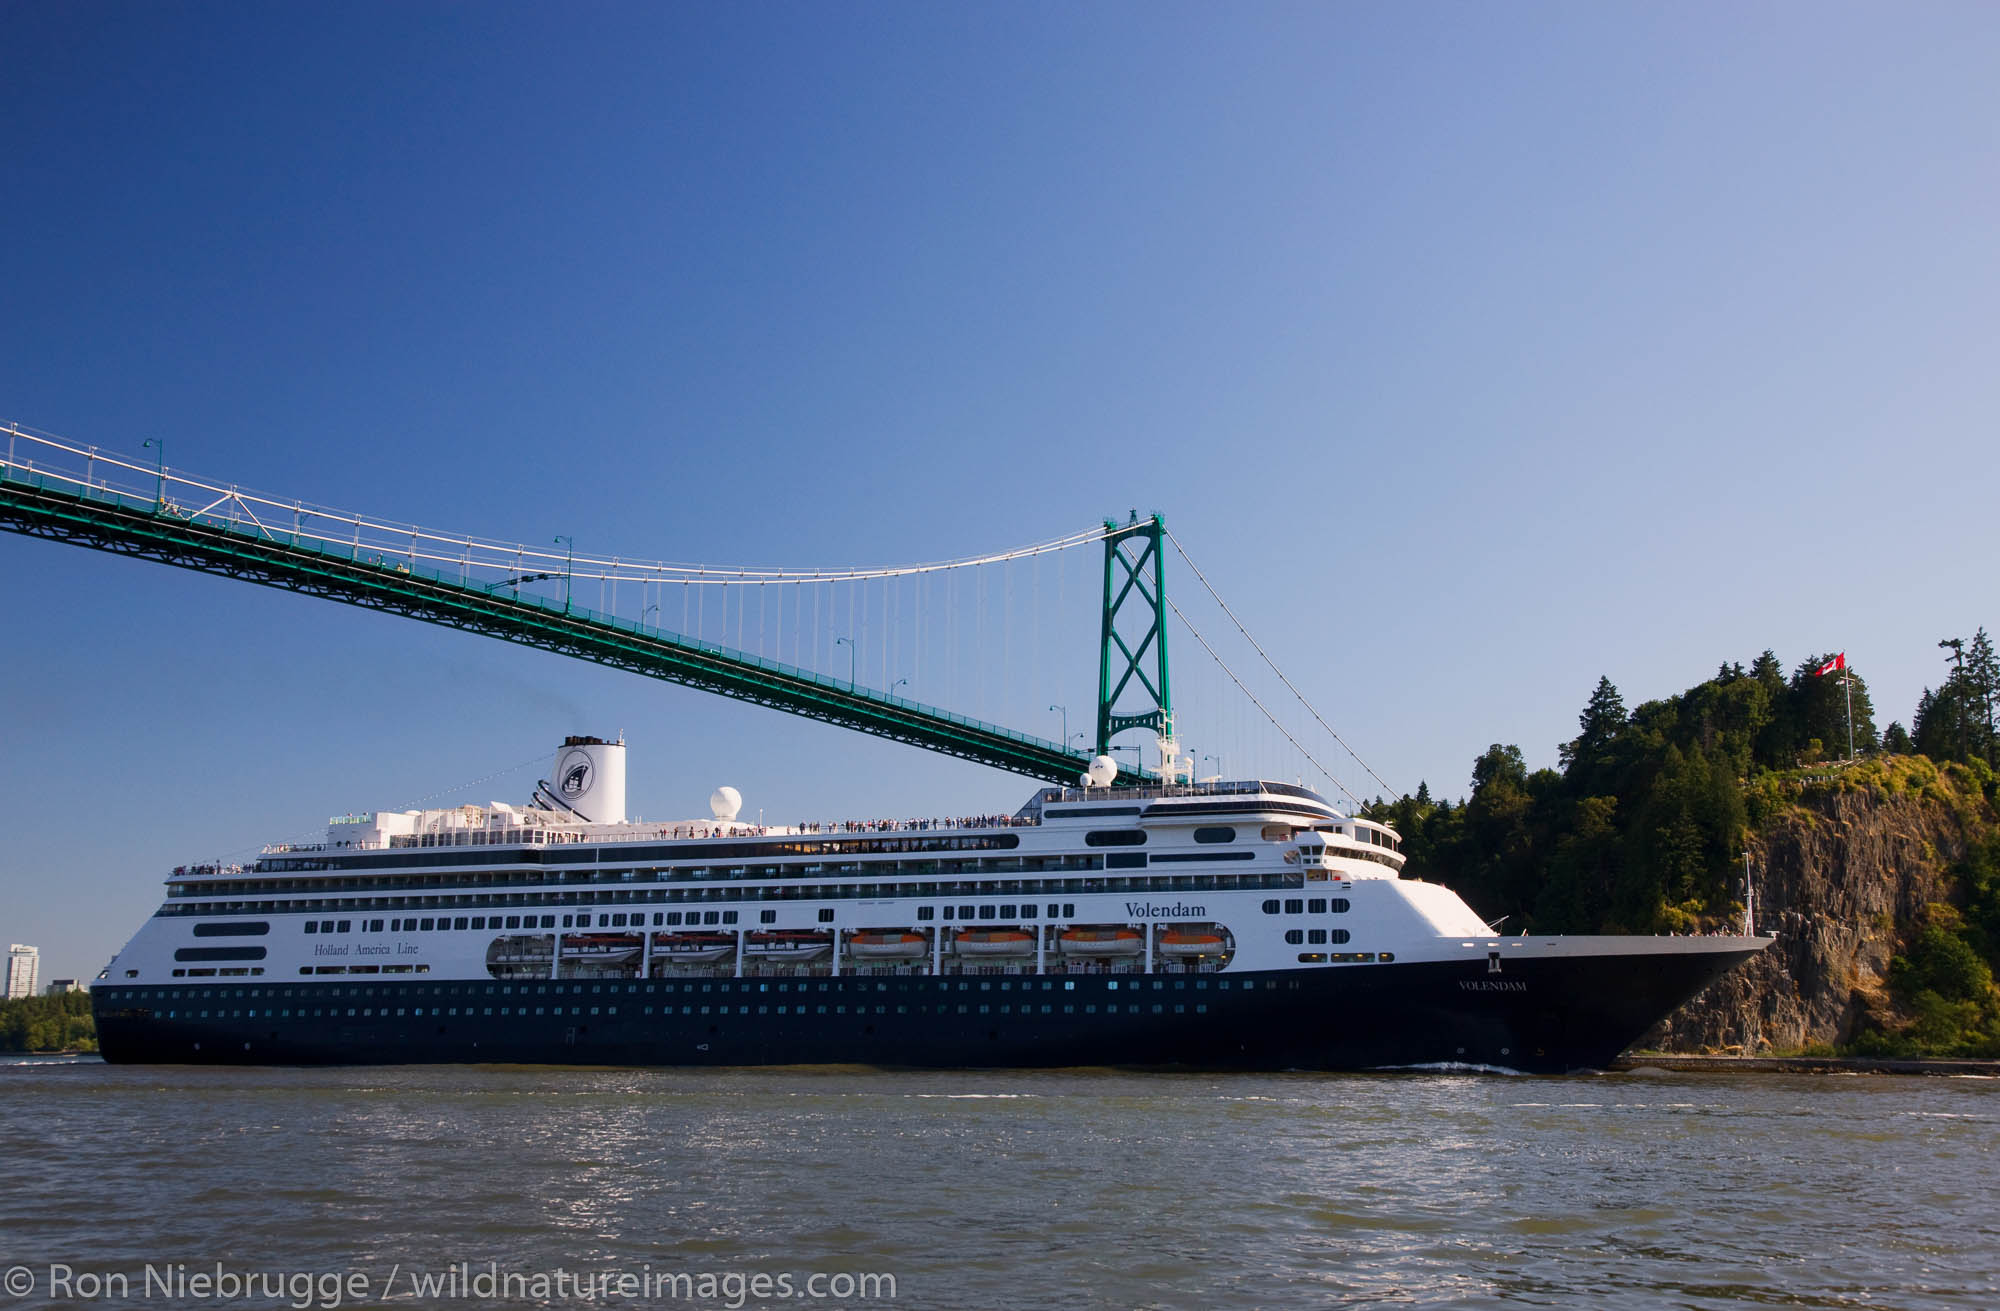 Holland America cruiseship Volendam passing under the Lions Gate Bridge, Vancouver, British Columbia, Canada.